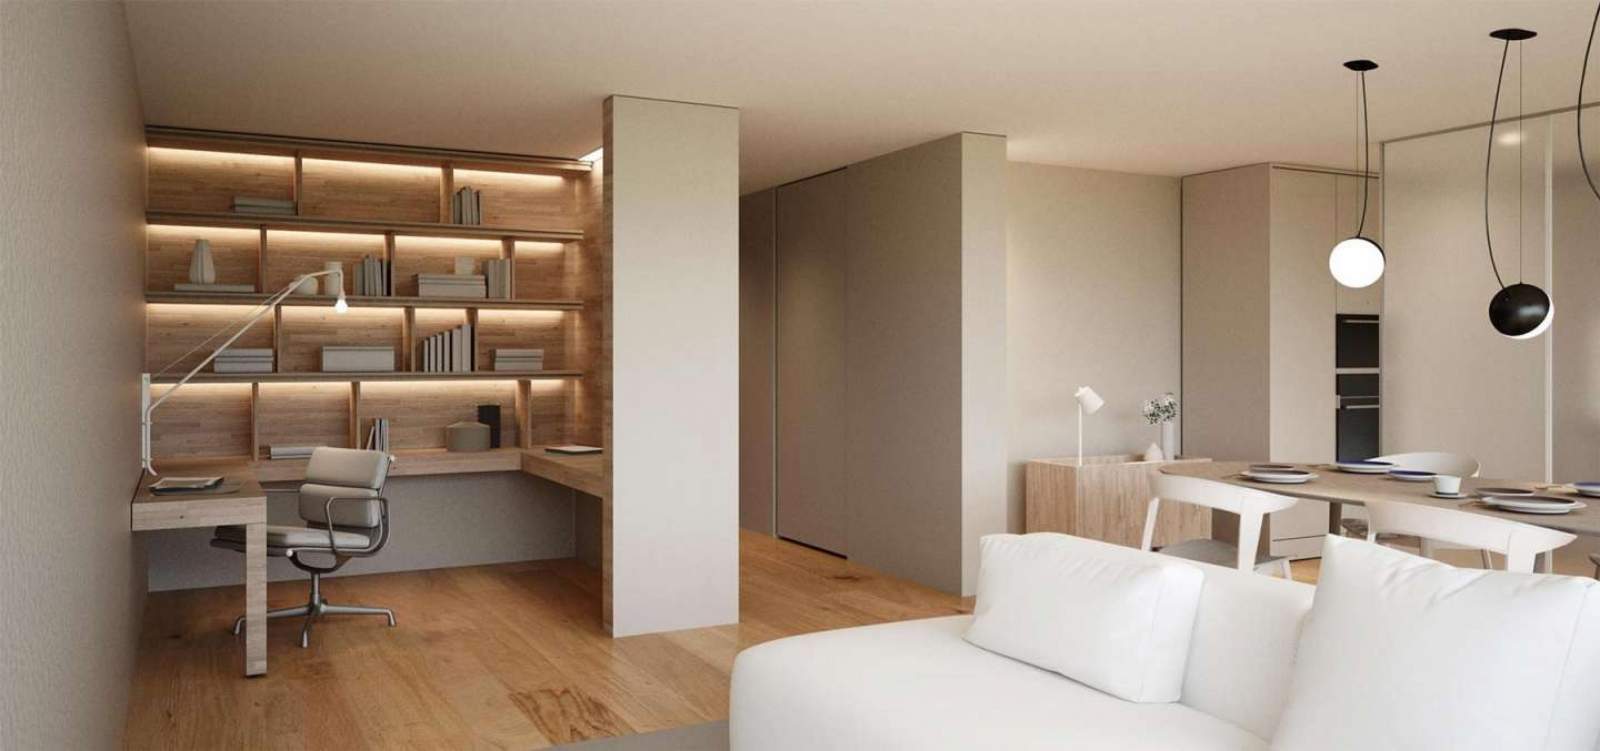 Apartamento novo e moderno, em condomínio exclusivo, Leça da Palmeira_133551